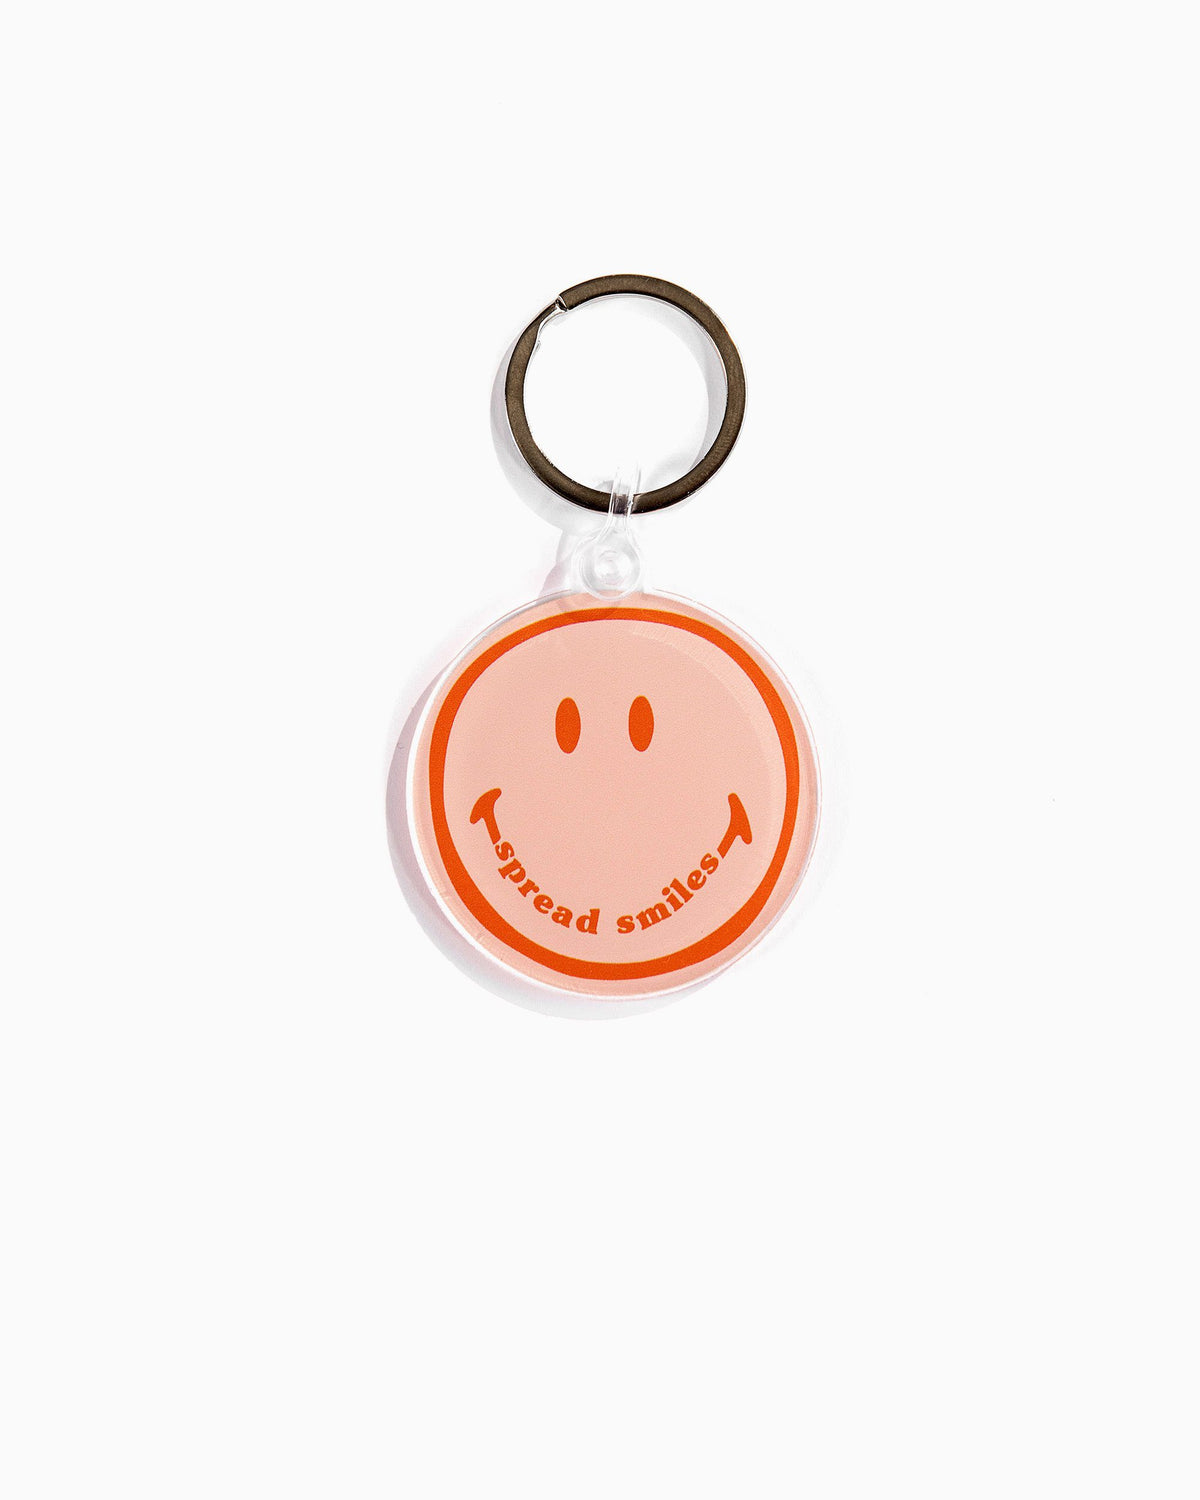 Spread Smiles Keychain - shoplivylu